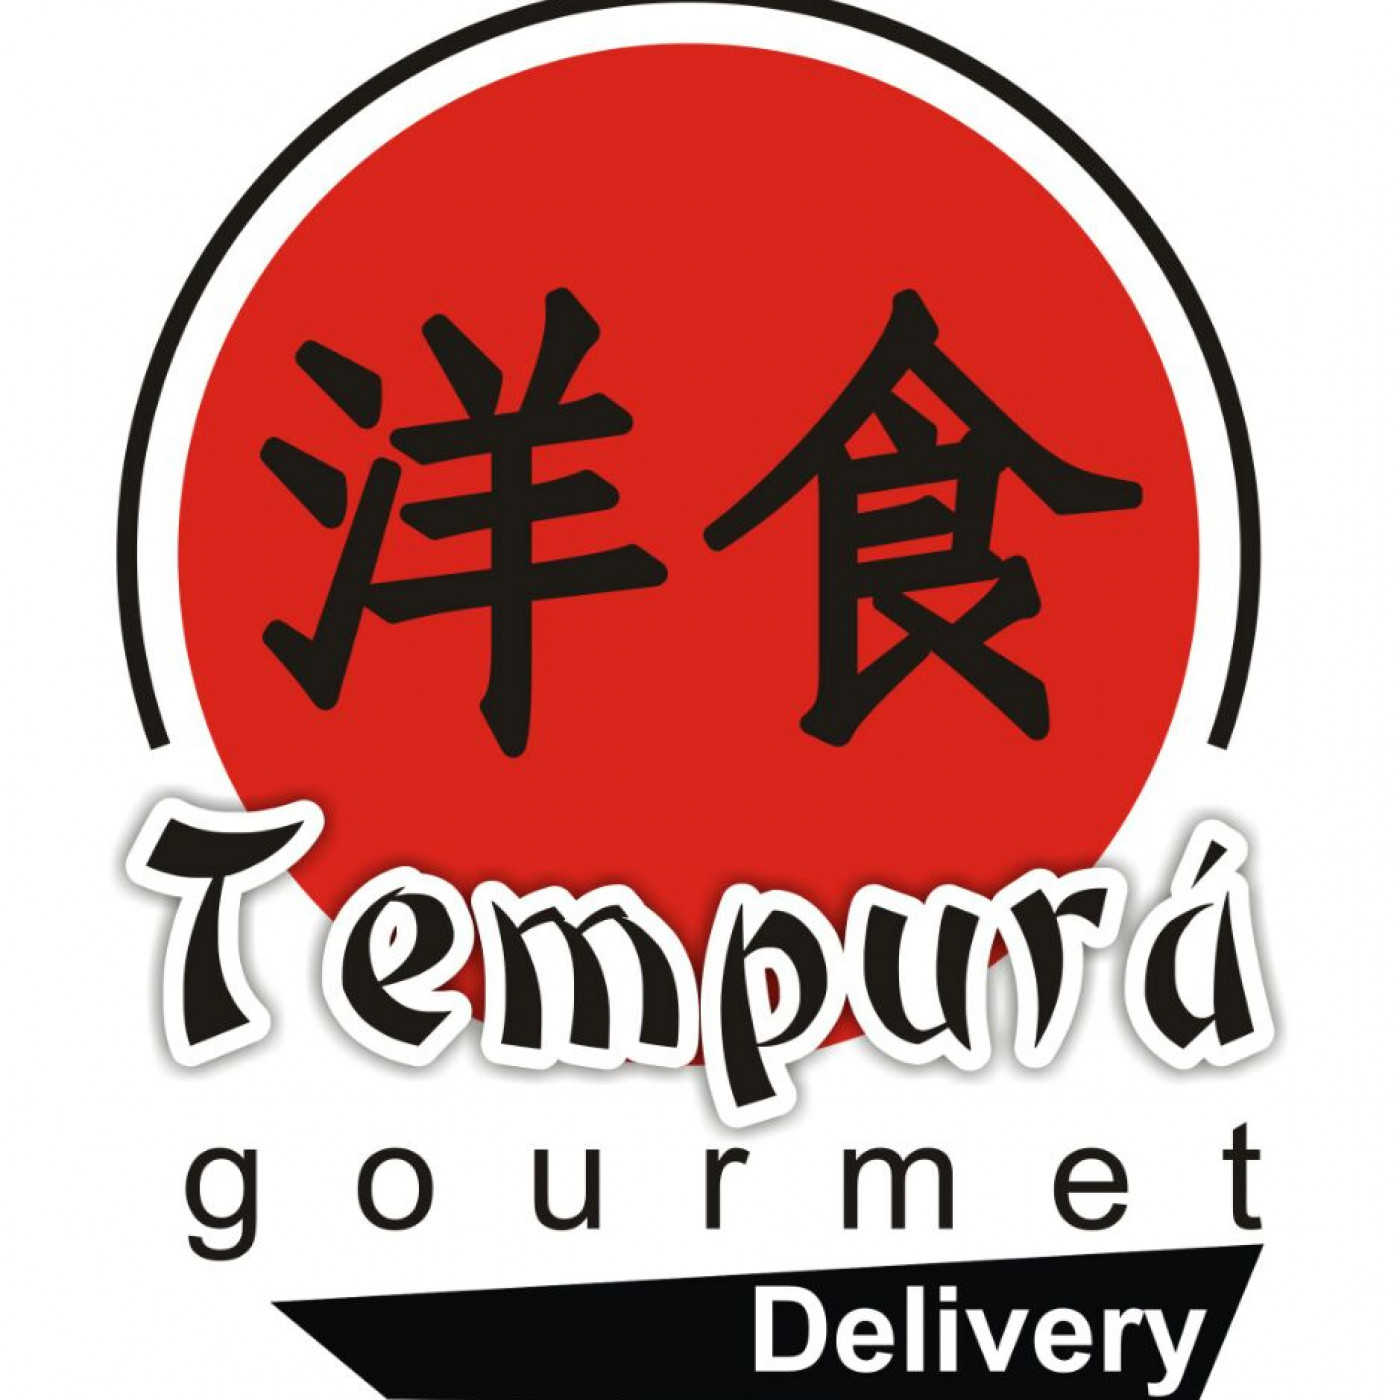 Tempurá Gourmet Delivery